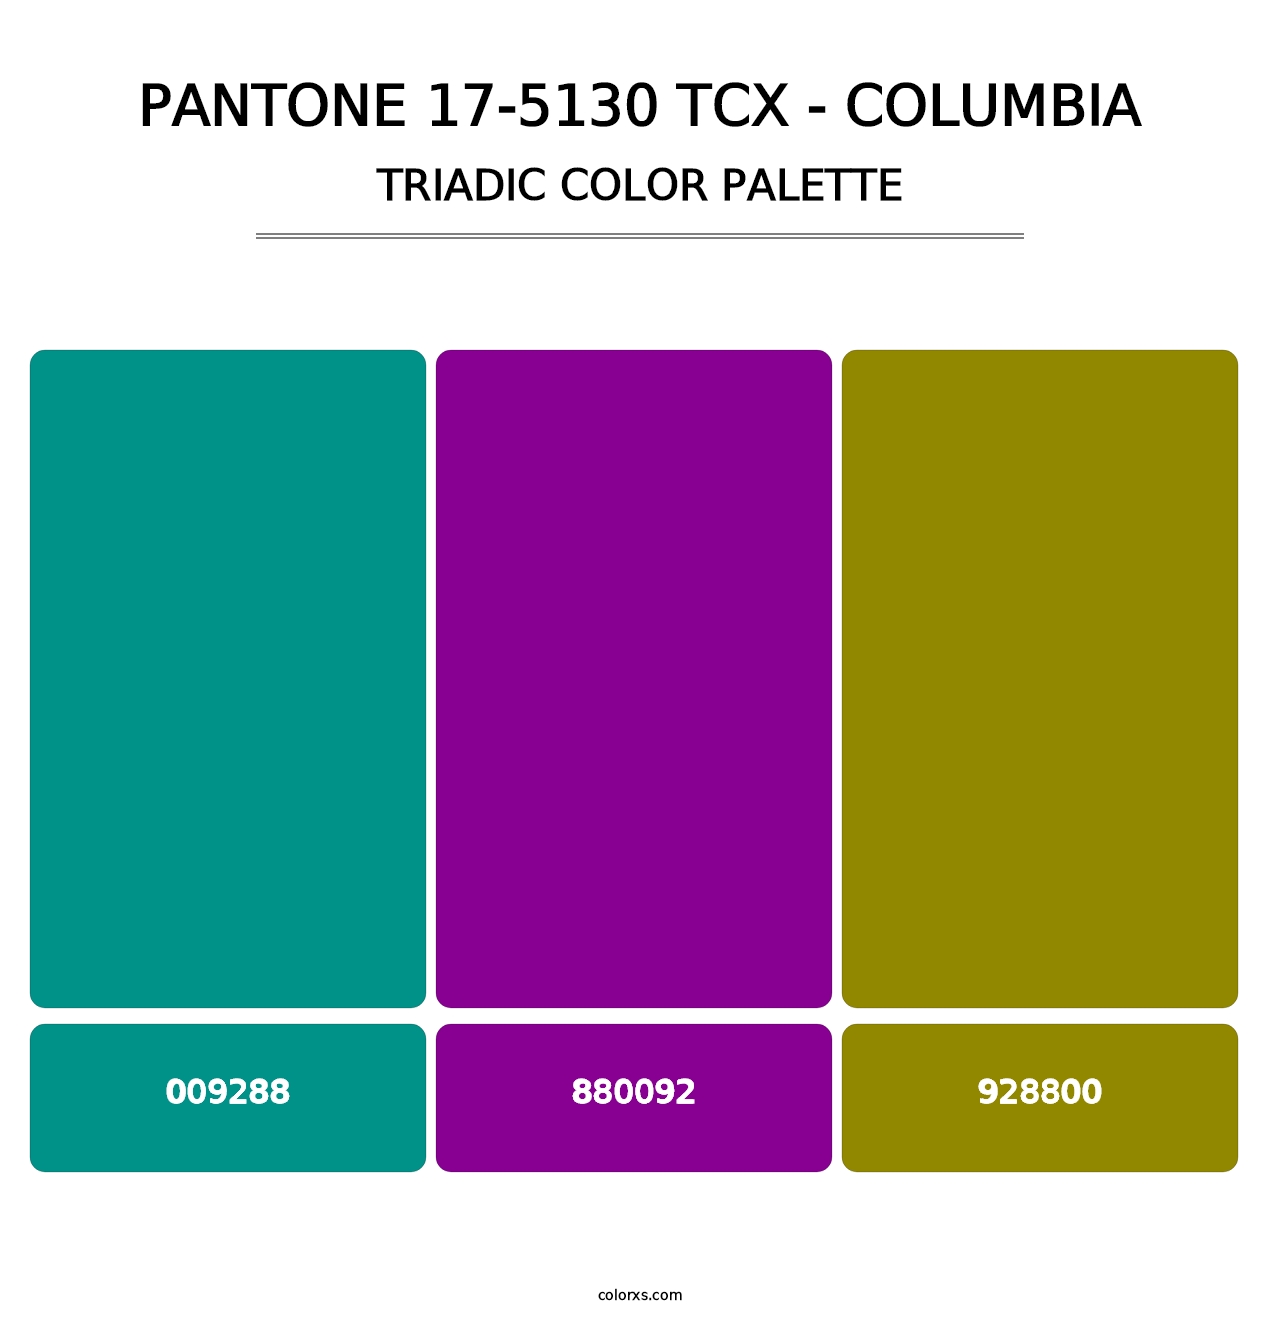 PANTONE 17-5130 TCX - Columbia - Triadic Color Palette